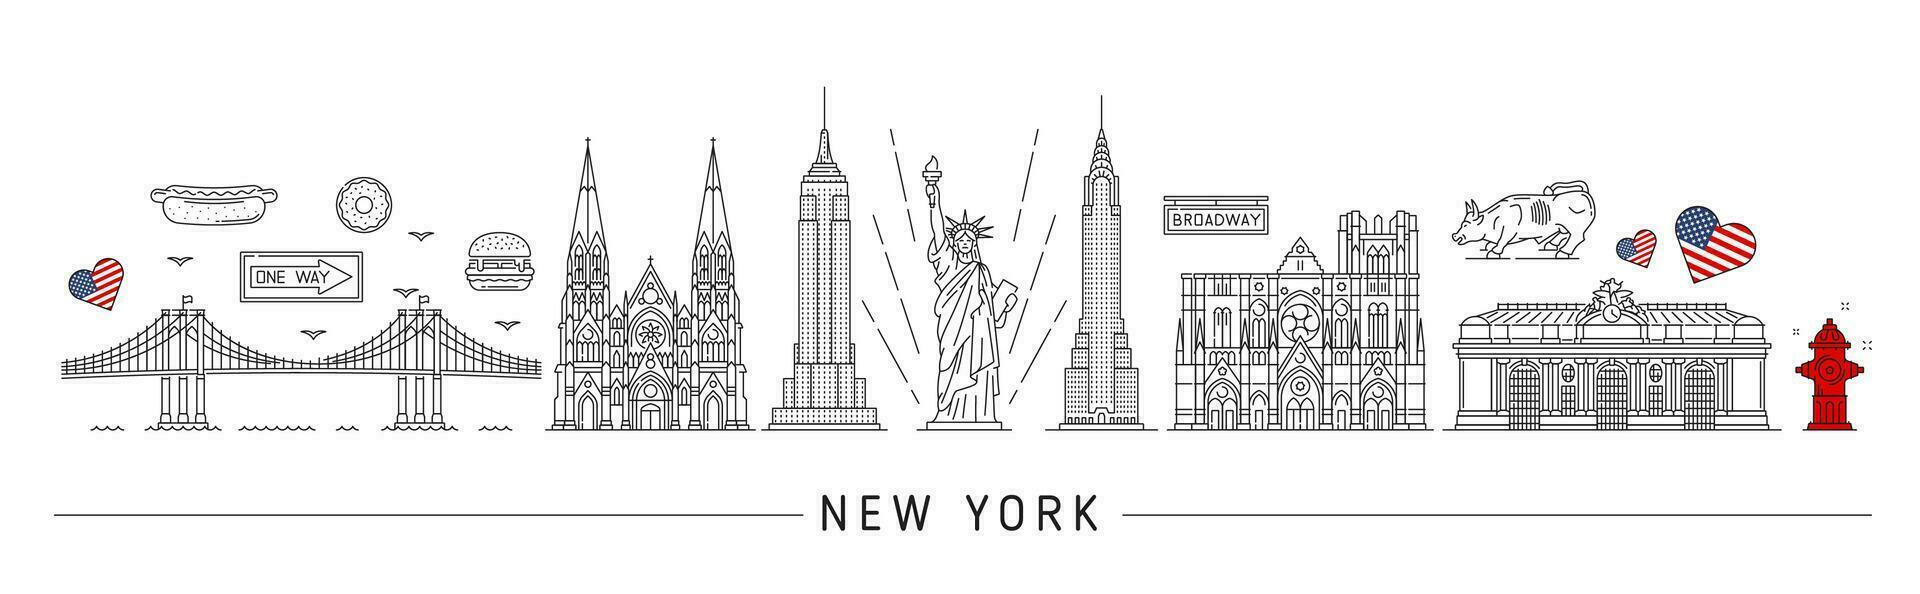 New York silhouette. USA travel landmarks vector